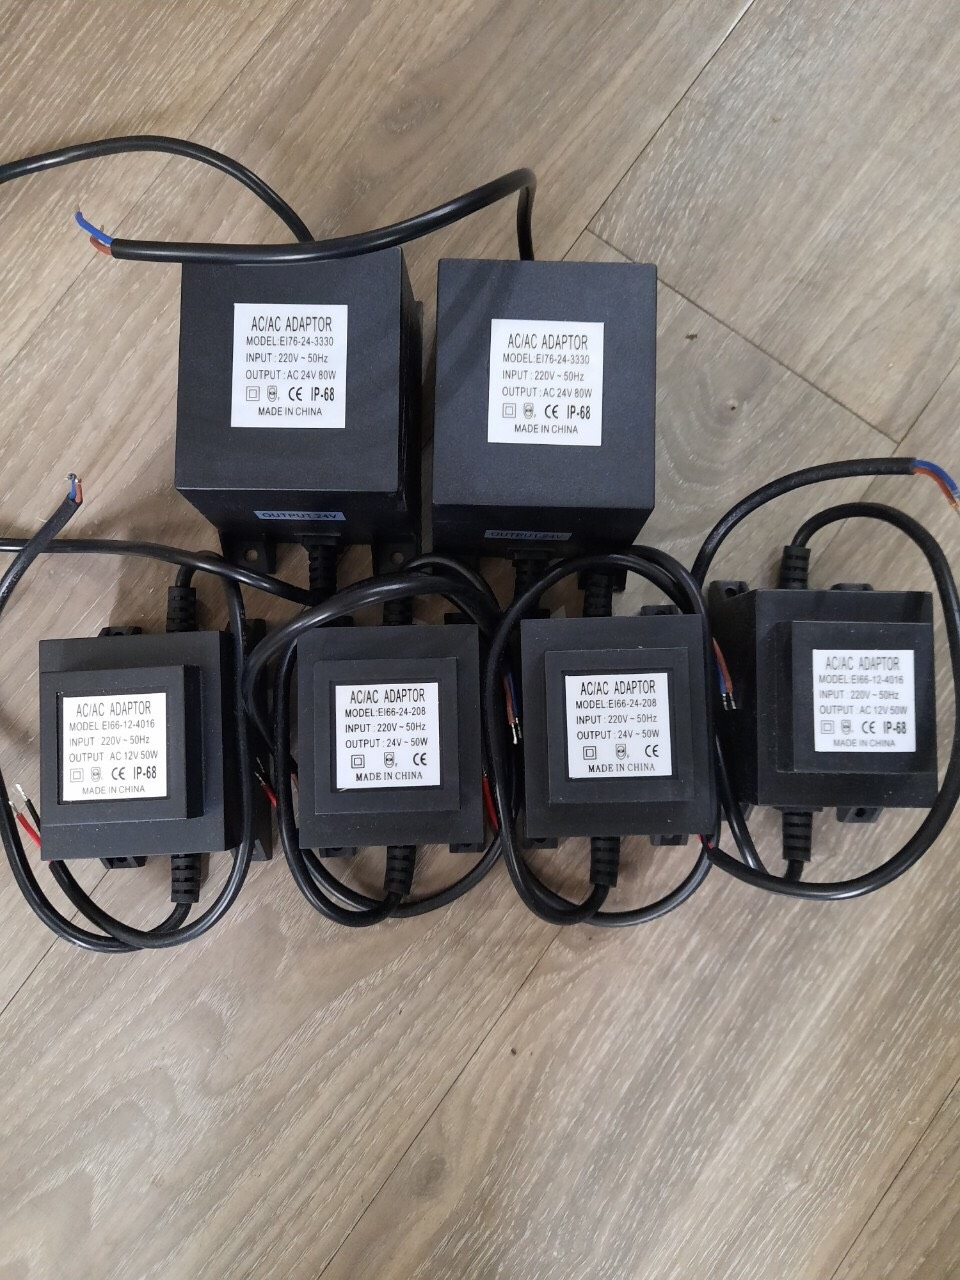 Bộ chuyển nguồn đèn LED 12v 30w-50w-80w-105w-150w-200w-260w-300w chống nước IP68 cao cấp TL-PW06